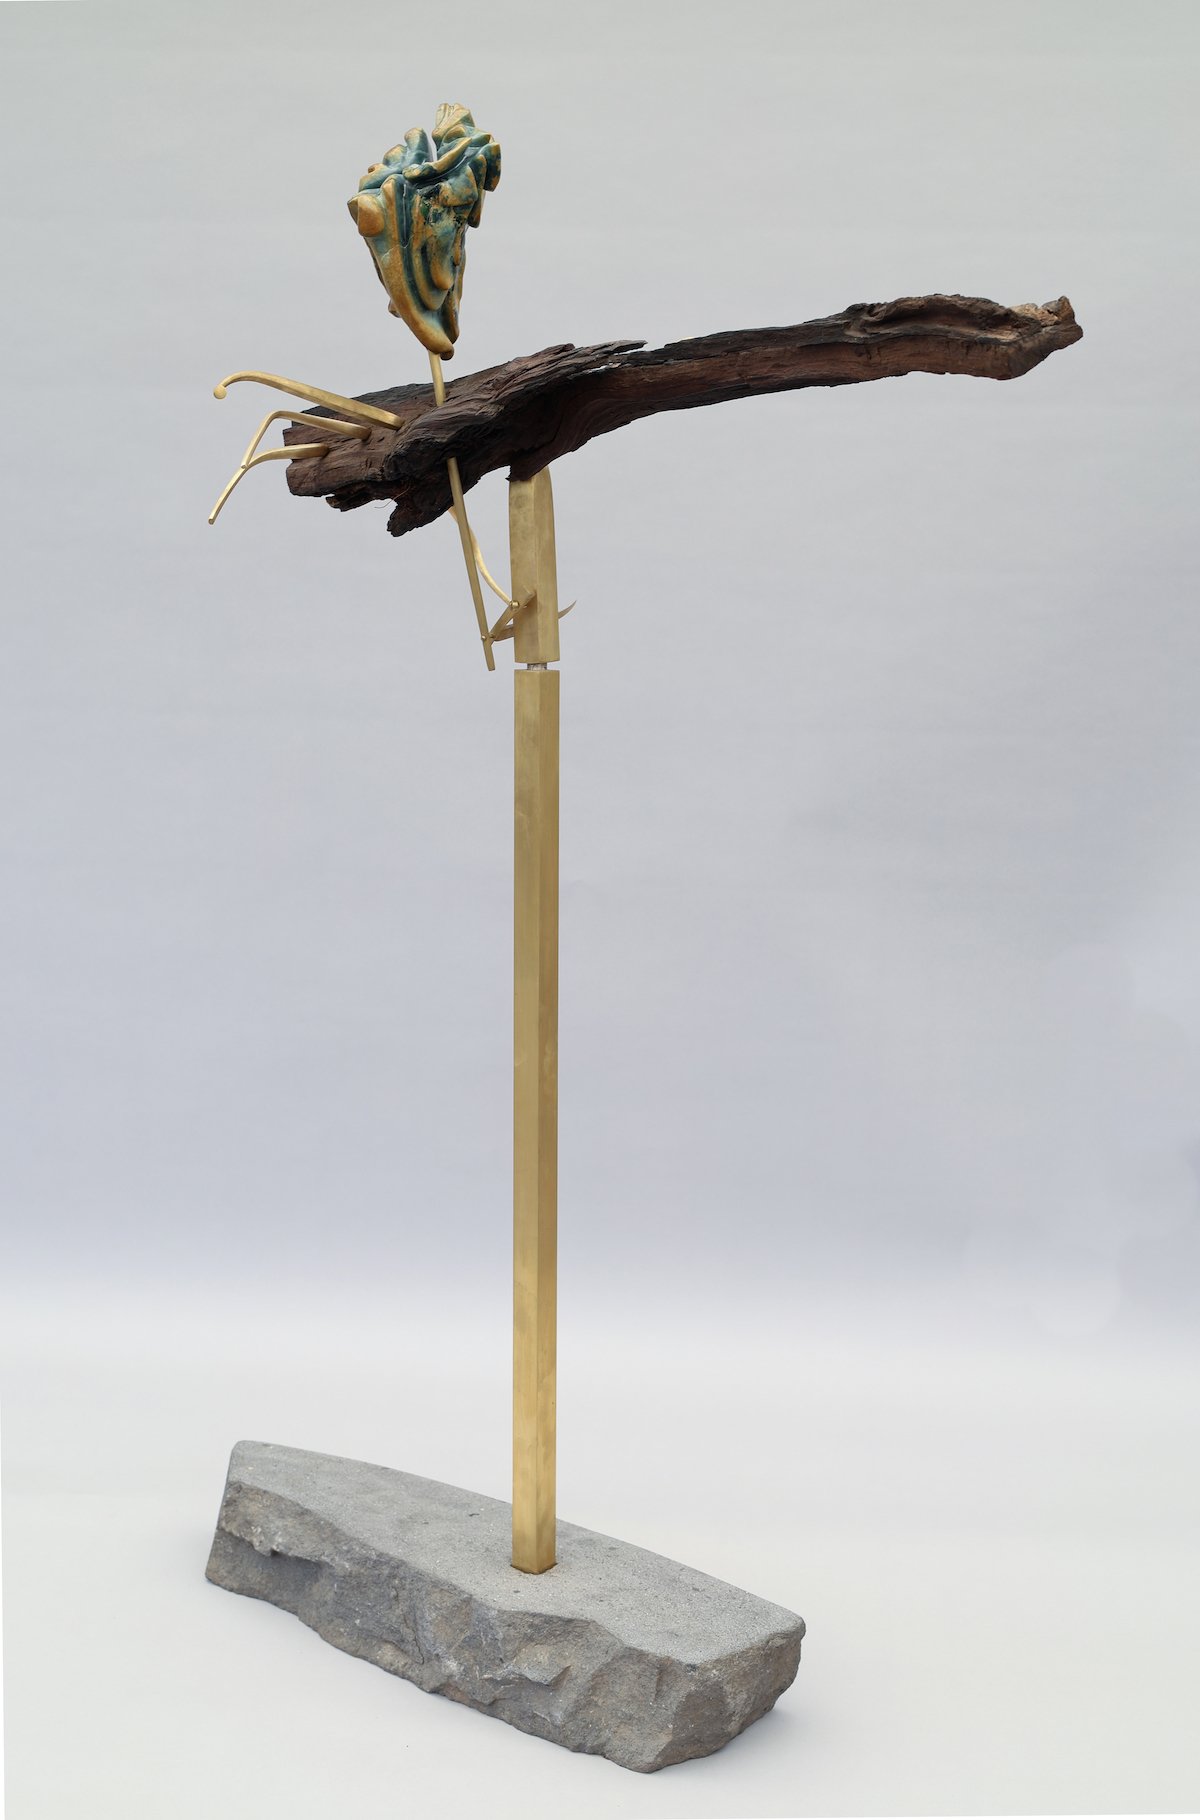 Zigarra-sculpture-julio-martinez-barnetche-marion-friedmann-gallery-high-res0G9A0244.jpg